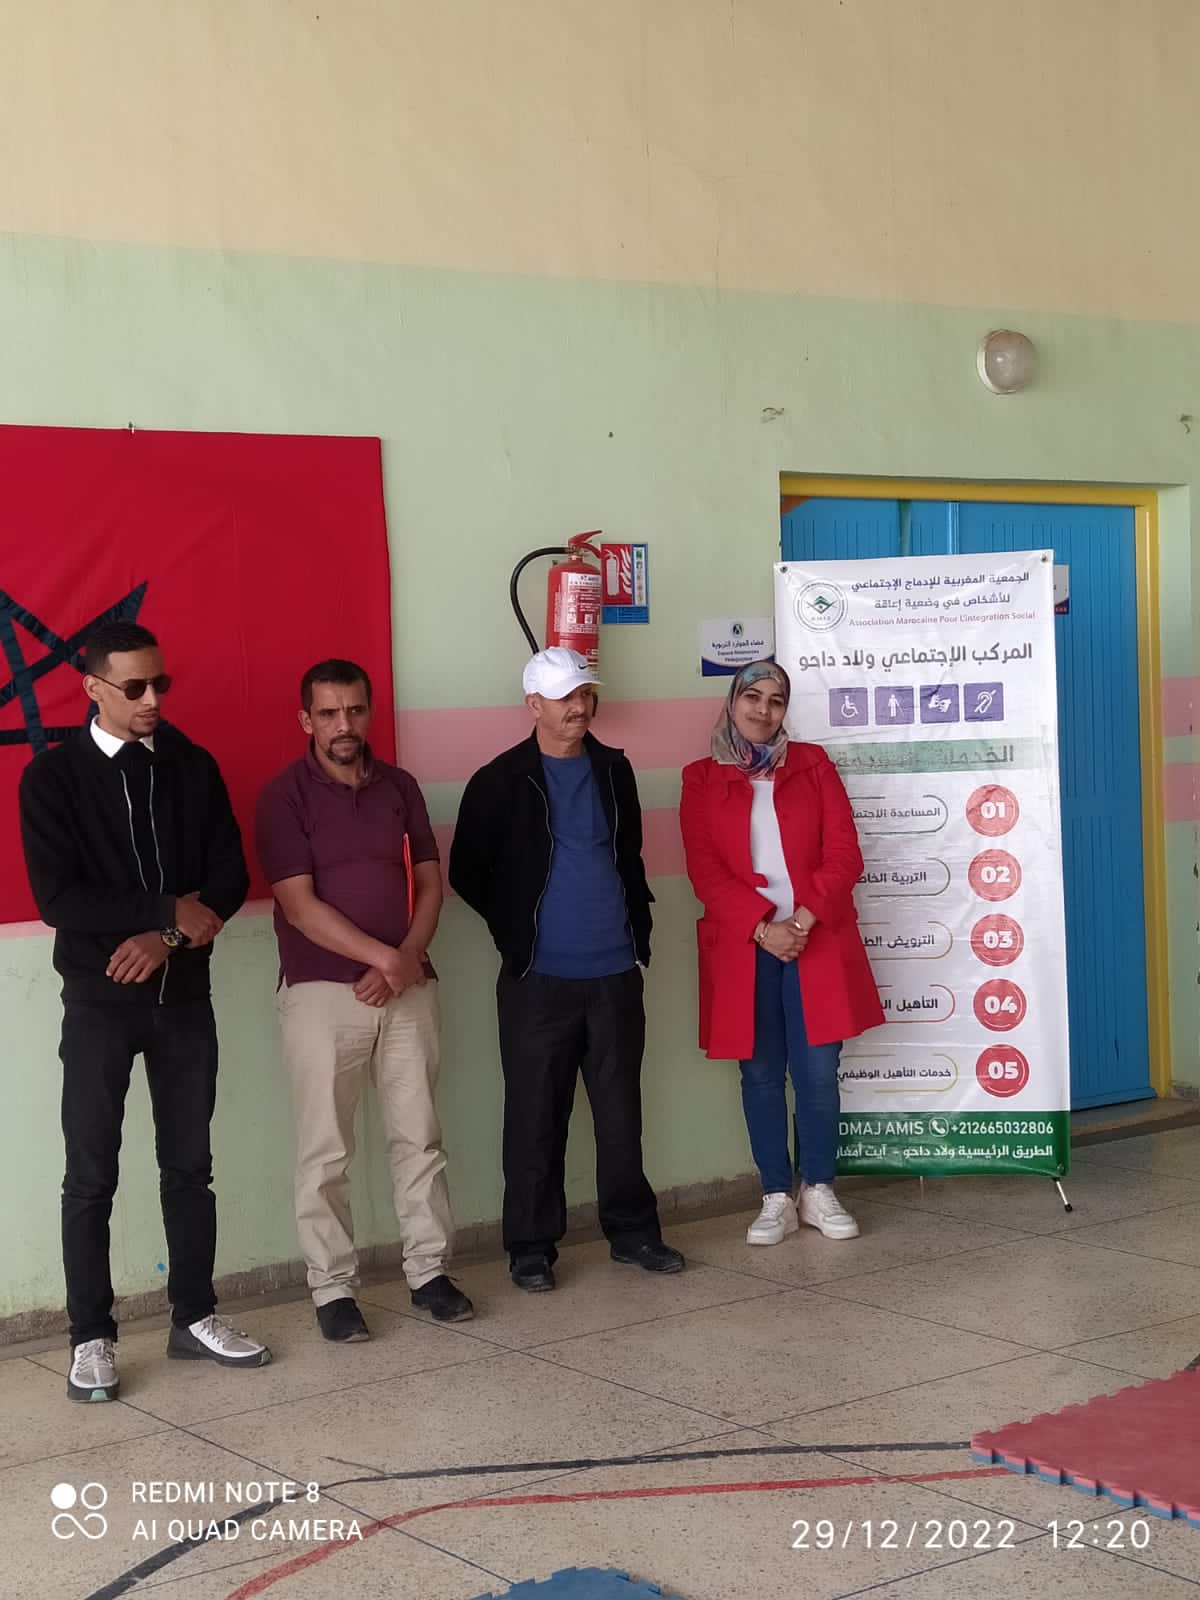 زيارة الجمعية المغربية الحقوقية و التضامن الوطني للجمعية المغربية للادماج الاجتماعي للأشخاص في وضعية إعاقة بولاد دحو